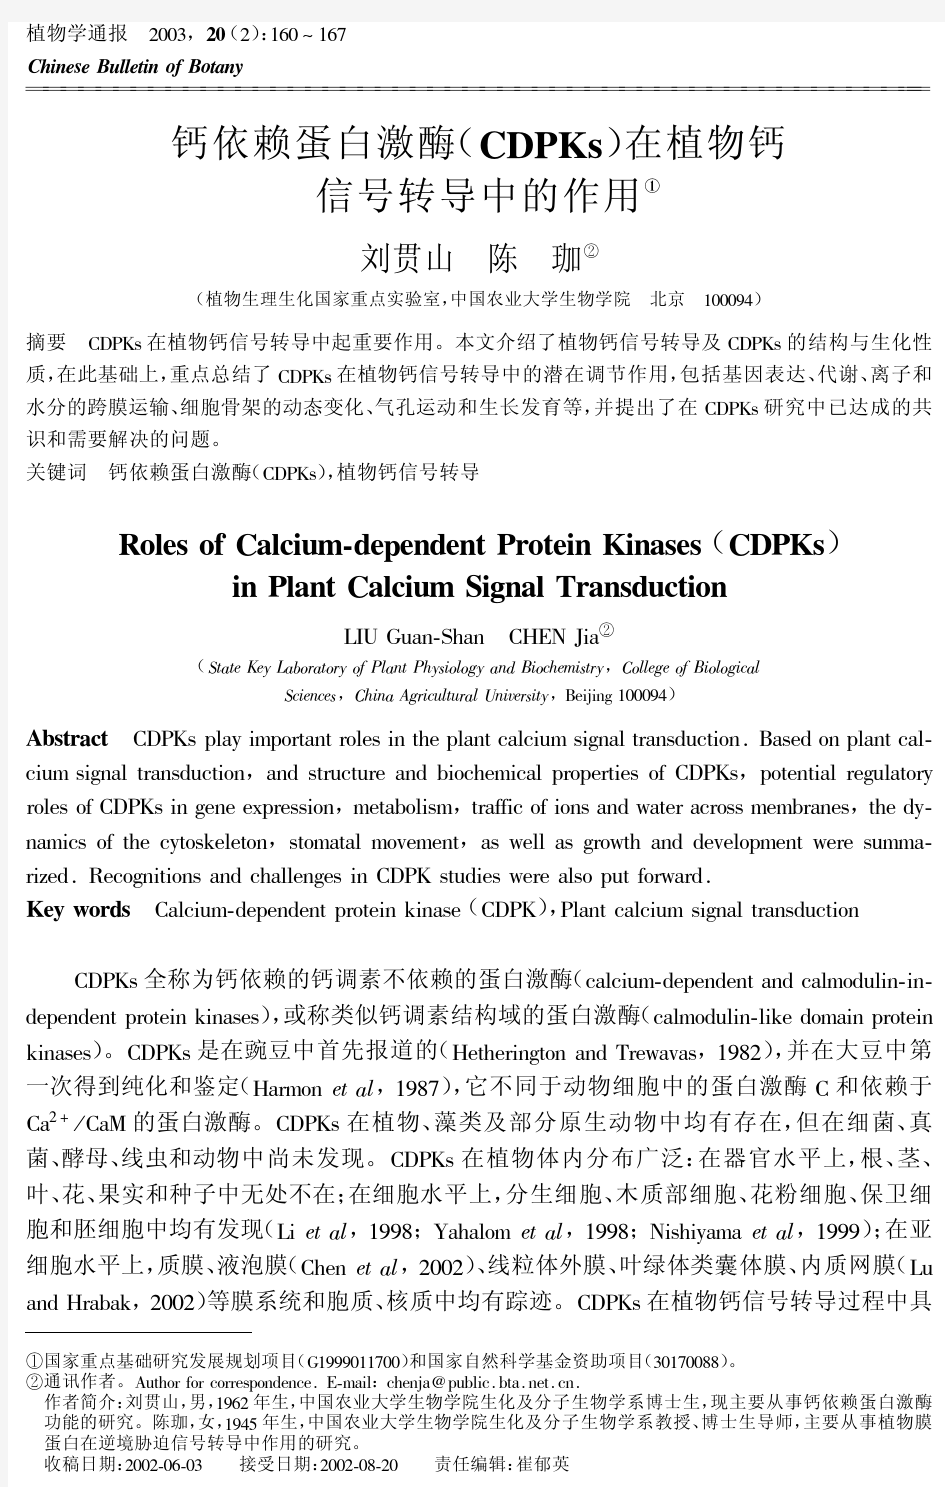 钙依赖蛋白激酶(CDPKs)在植物钙信号转导中的作用